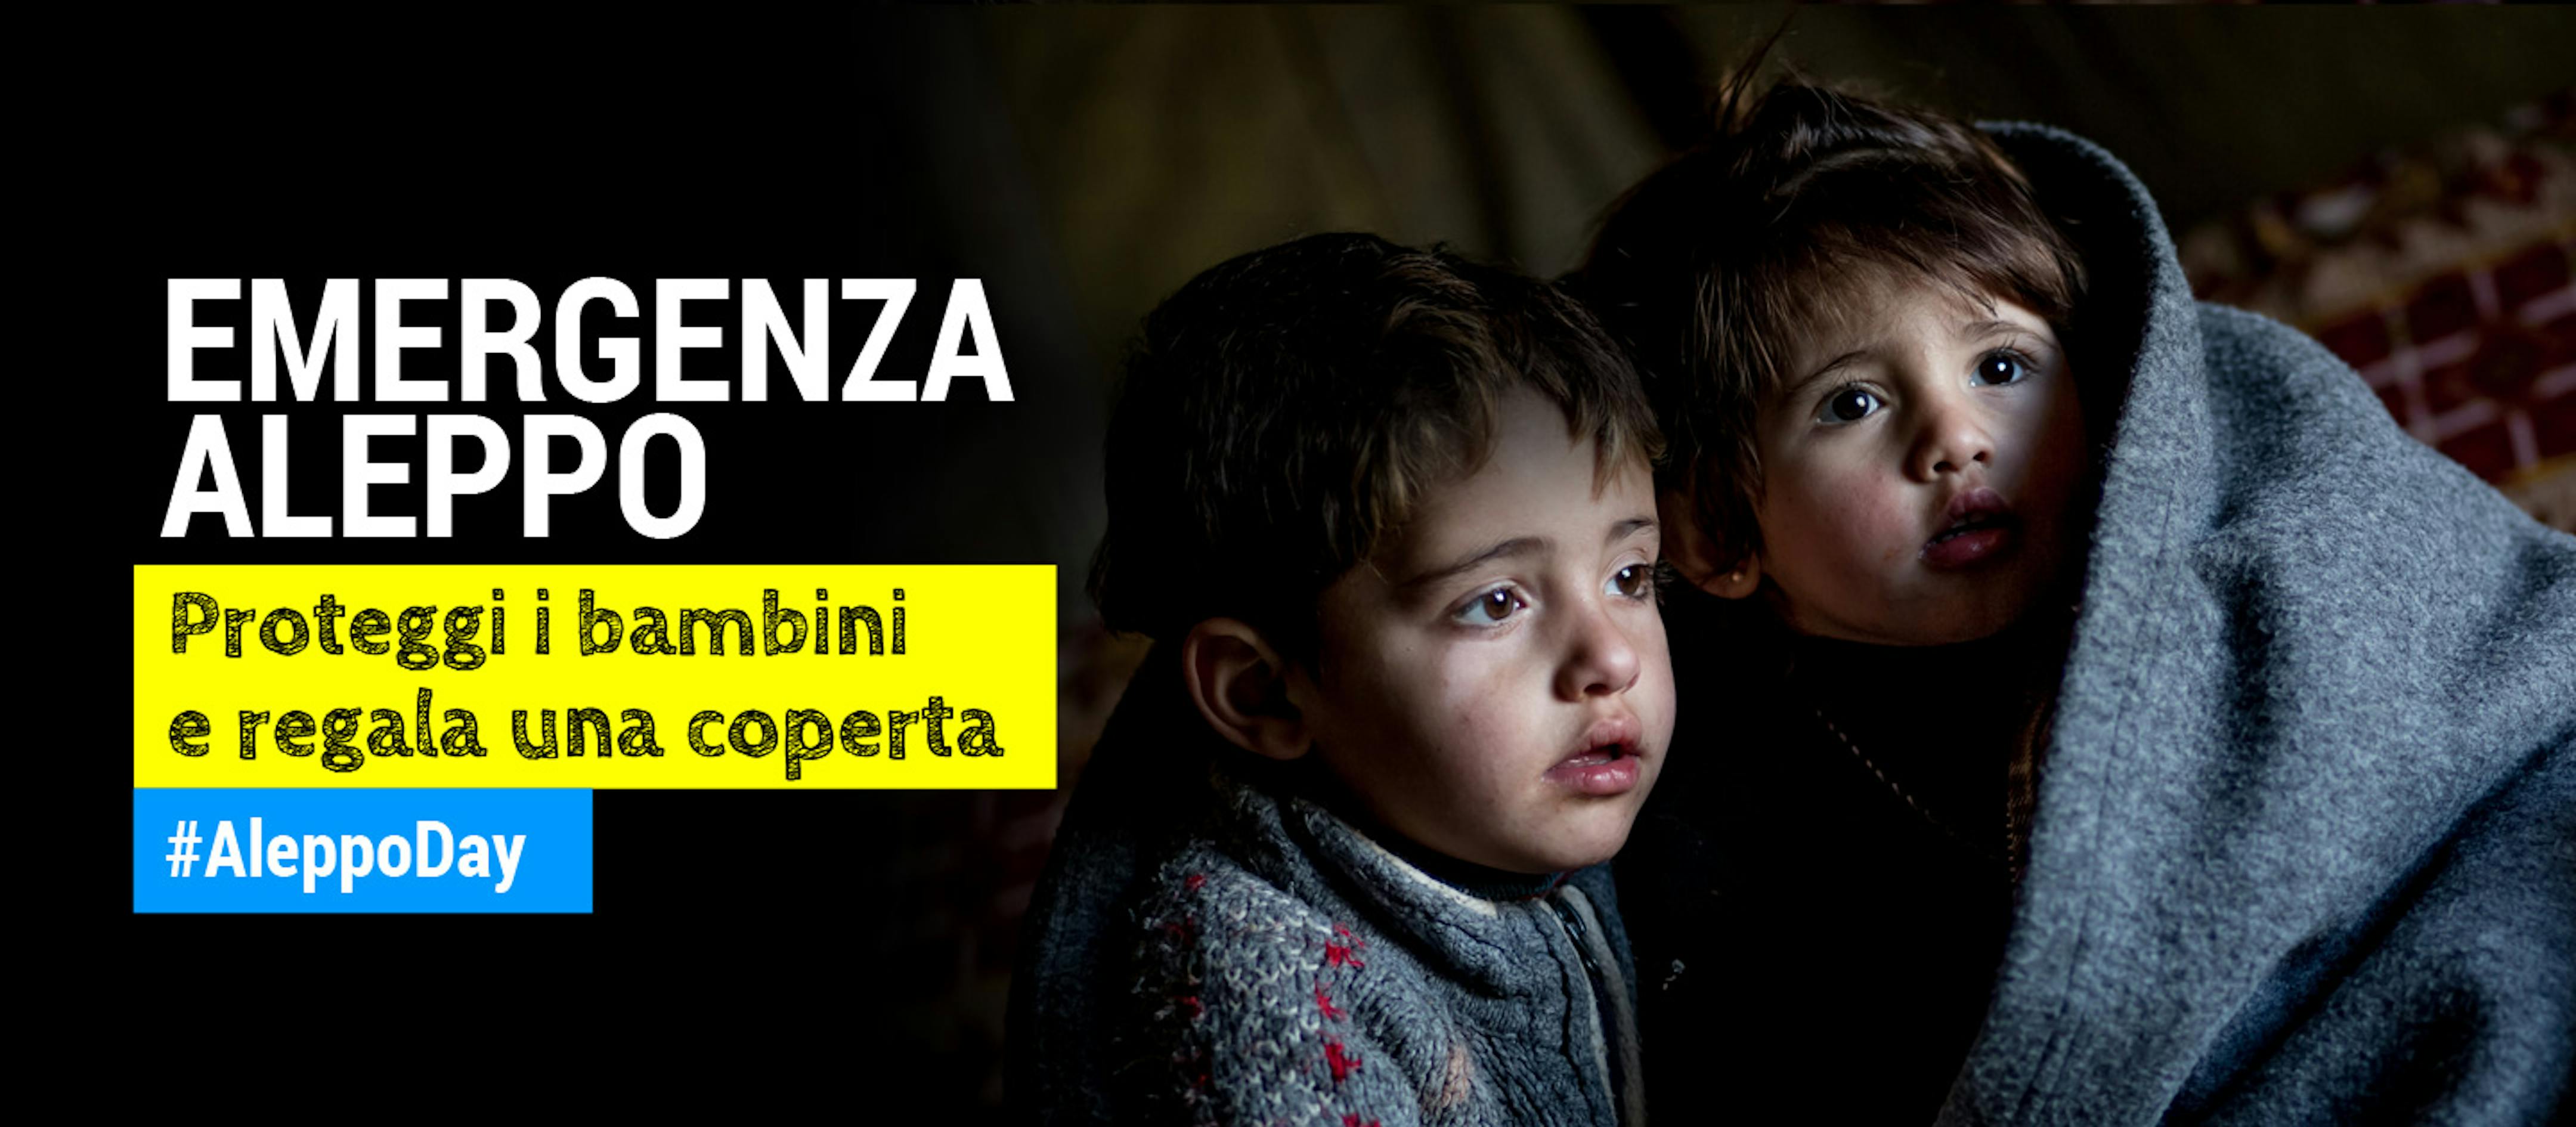 EMERGENZA-ALEPPO---UNICEF-cover-sito.jpg